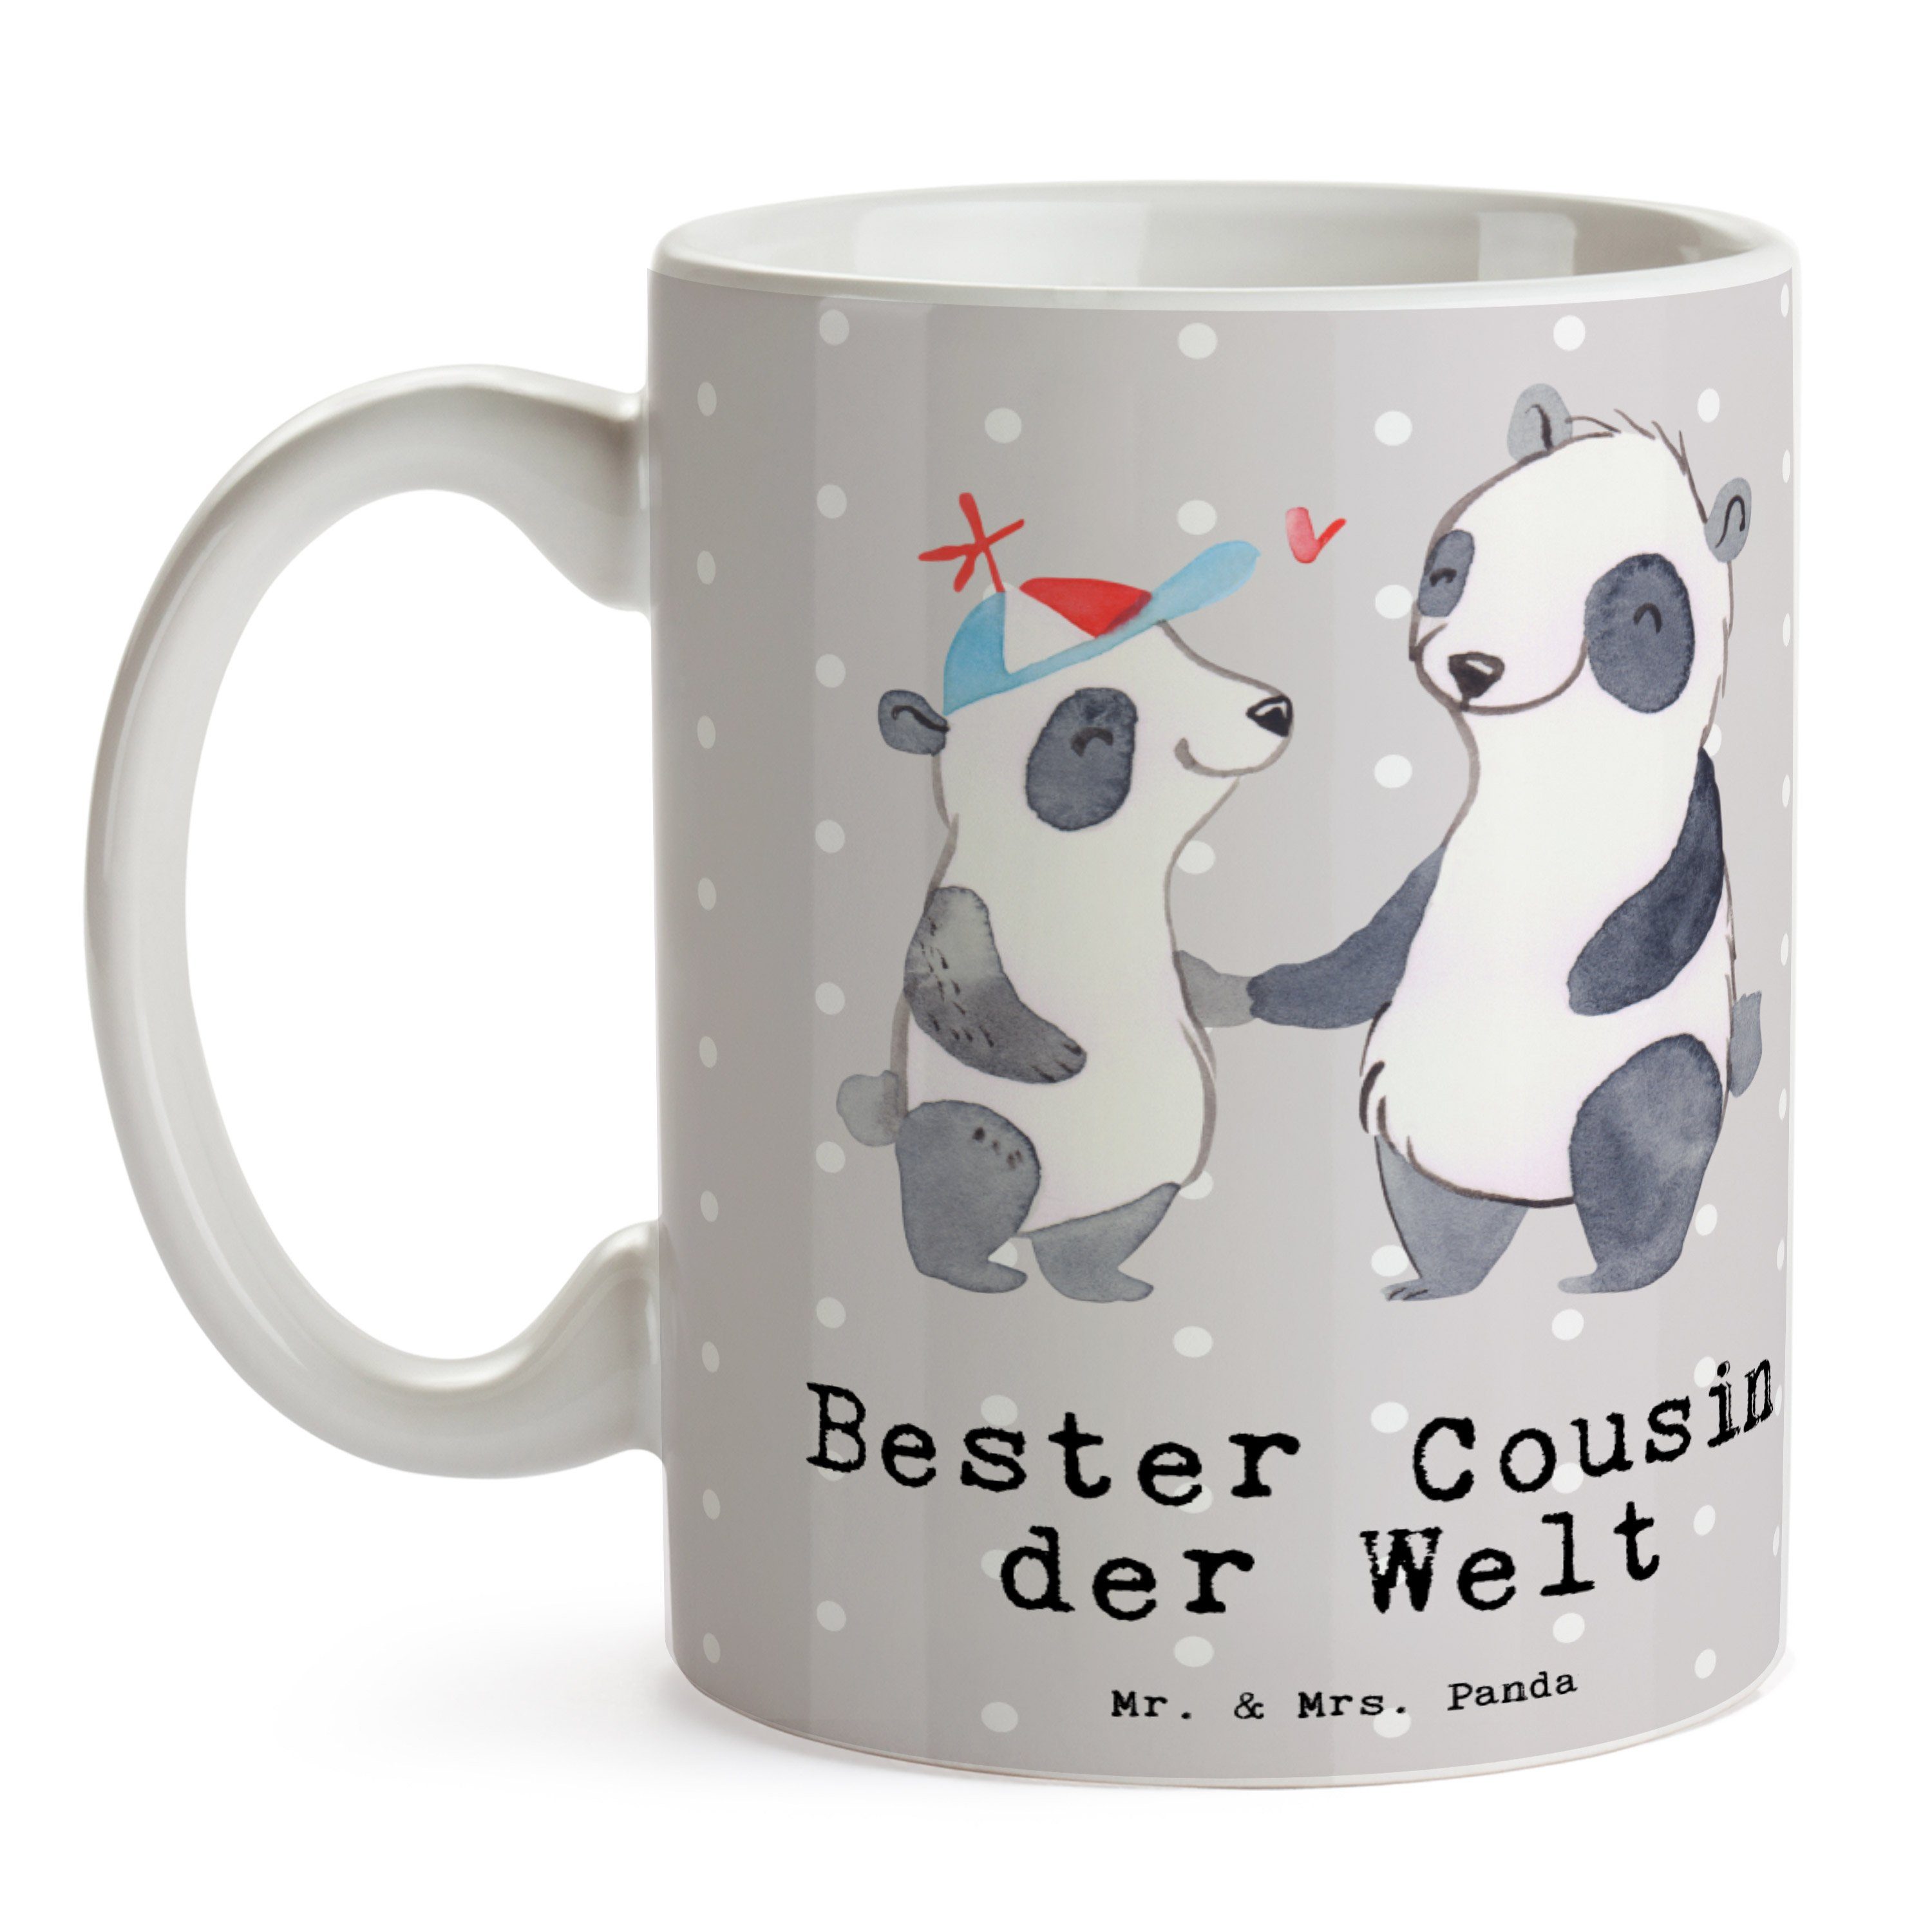 Mr. & Mrs. Panda Geschenk, Vetter, Tasse Welt Bester - der Panda - Grau Gebur, Keramik Cousin Pastell